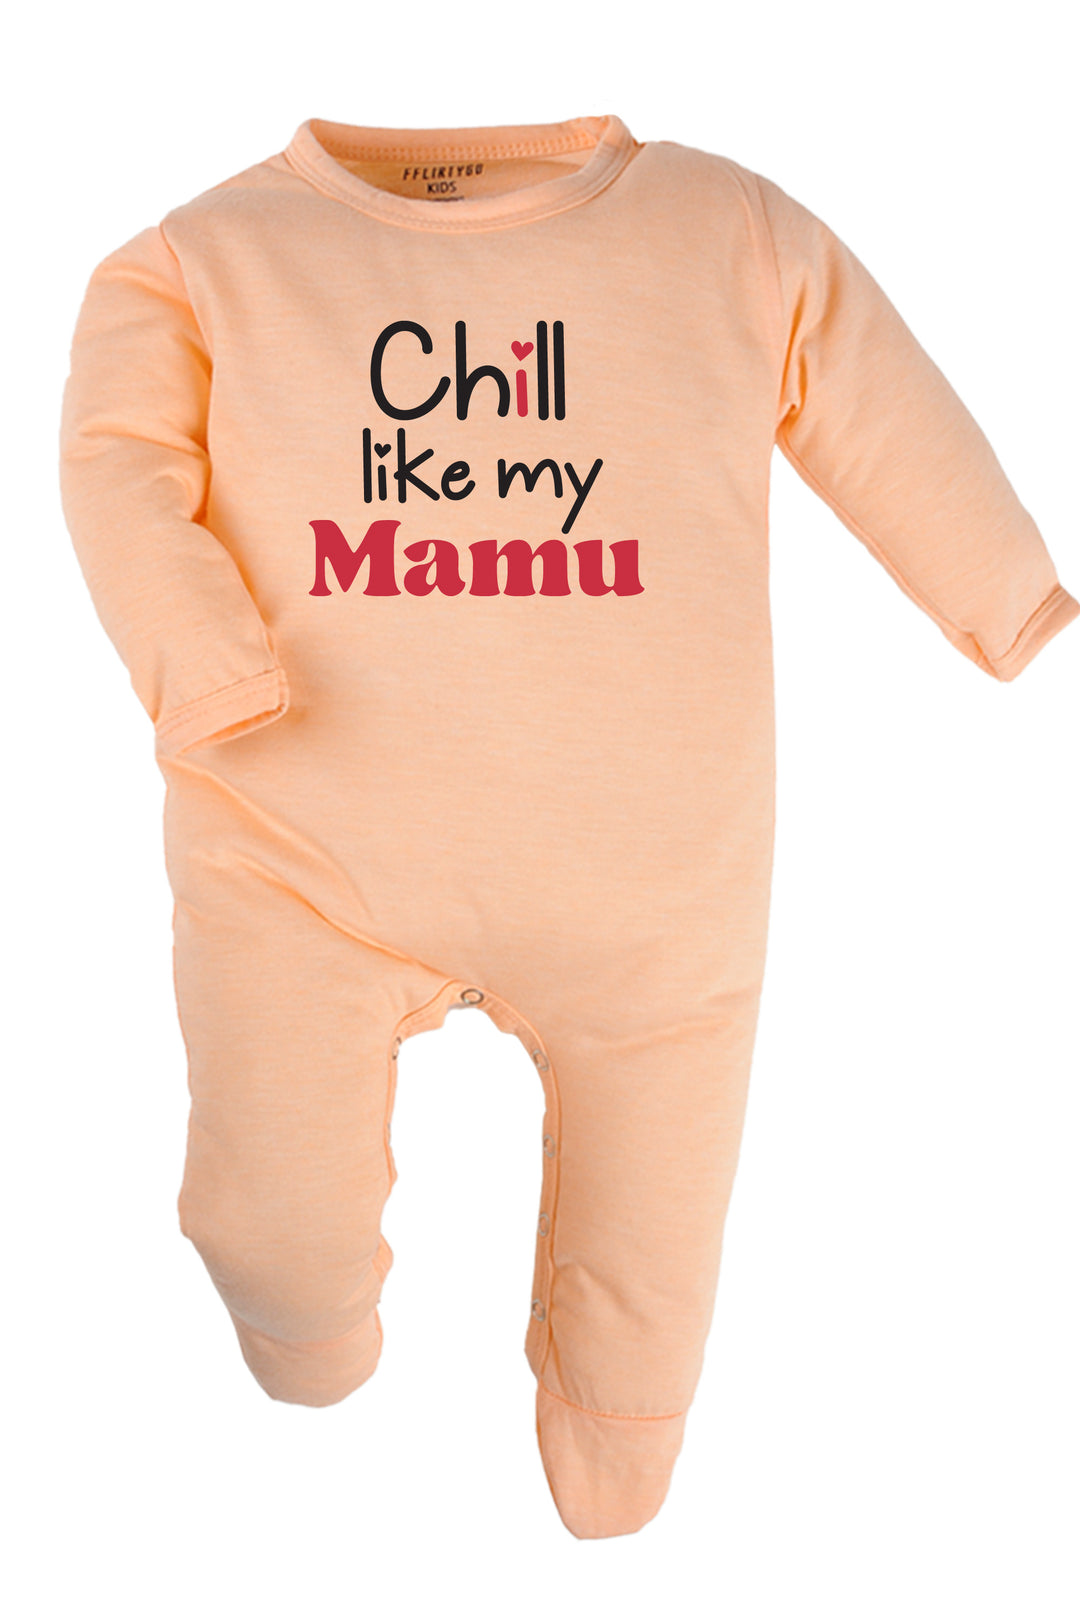 Chill Like My Mamu Baby Romper | Onesies